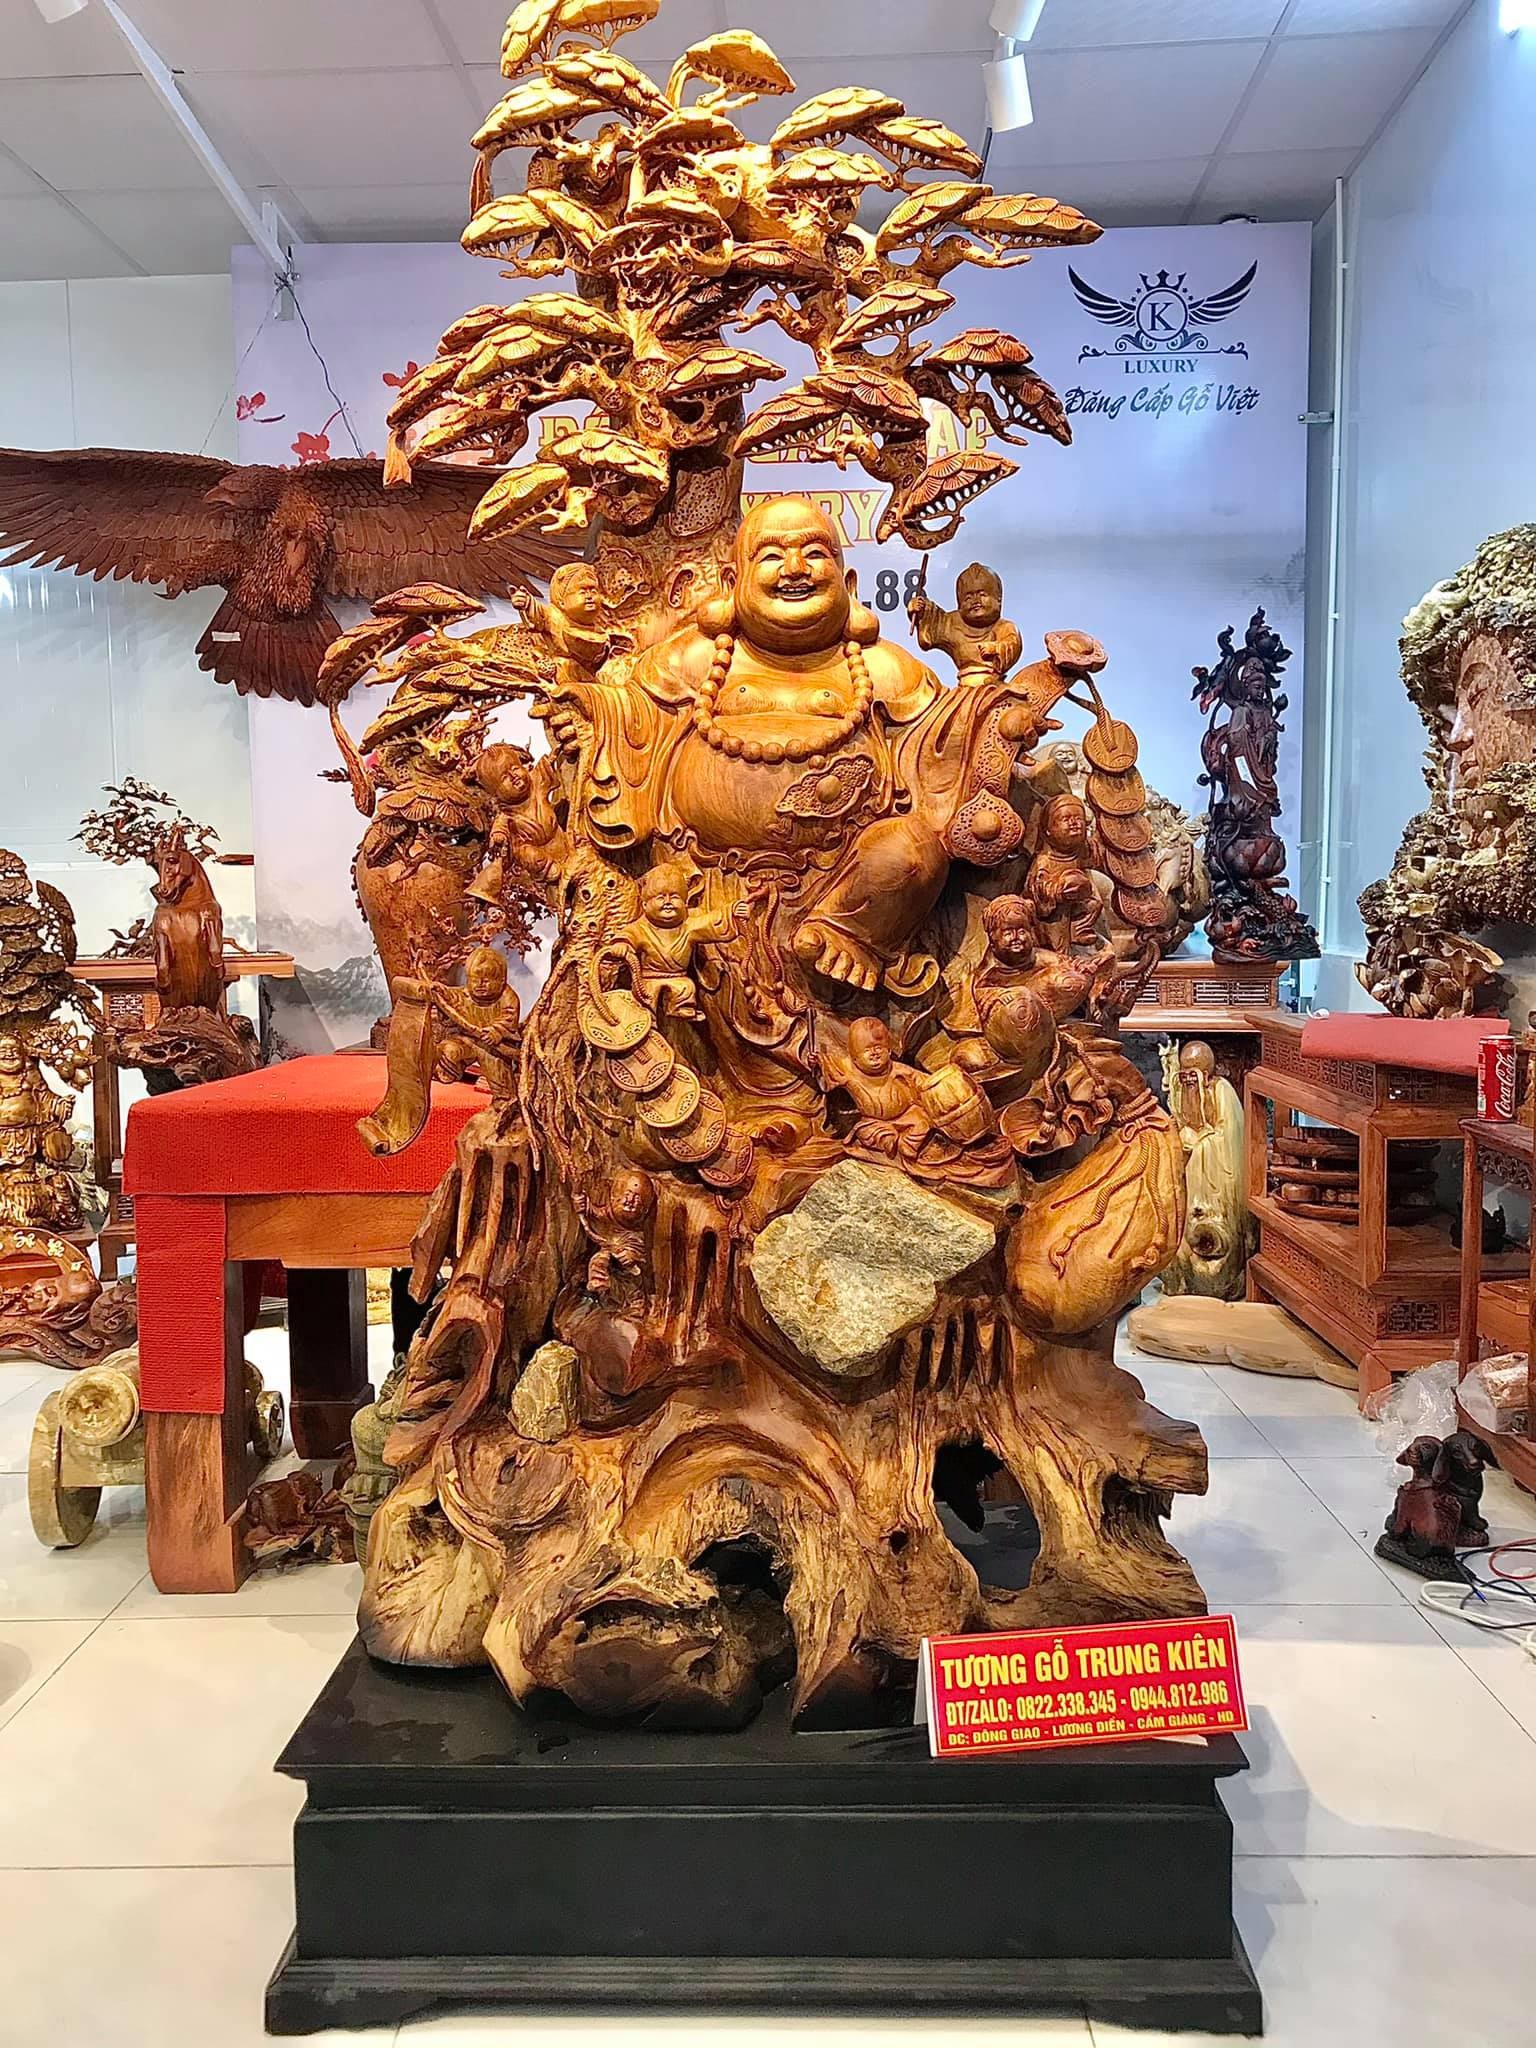 Sự đa dạng về nghệ thuật và ý nghĩa của sản phẩm mang lại tại tượng gỗ Trung Kiên - ảnh 1